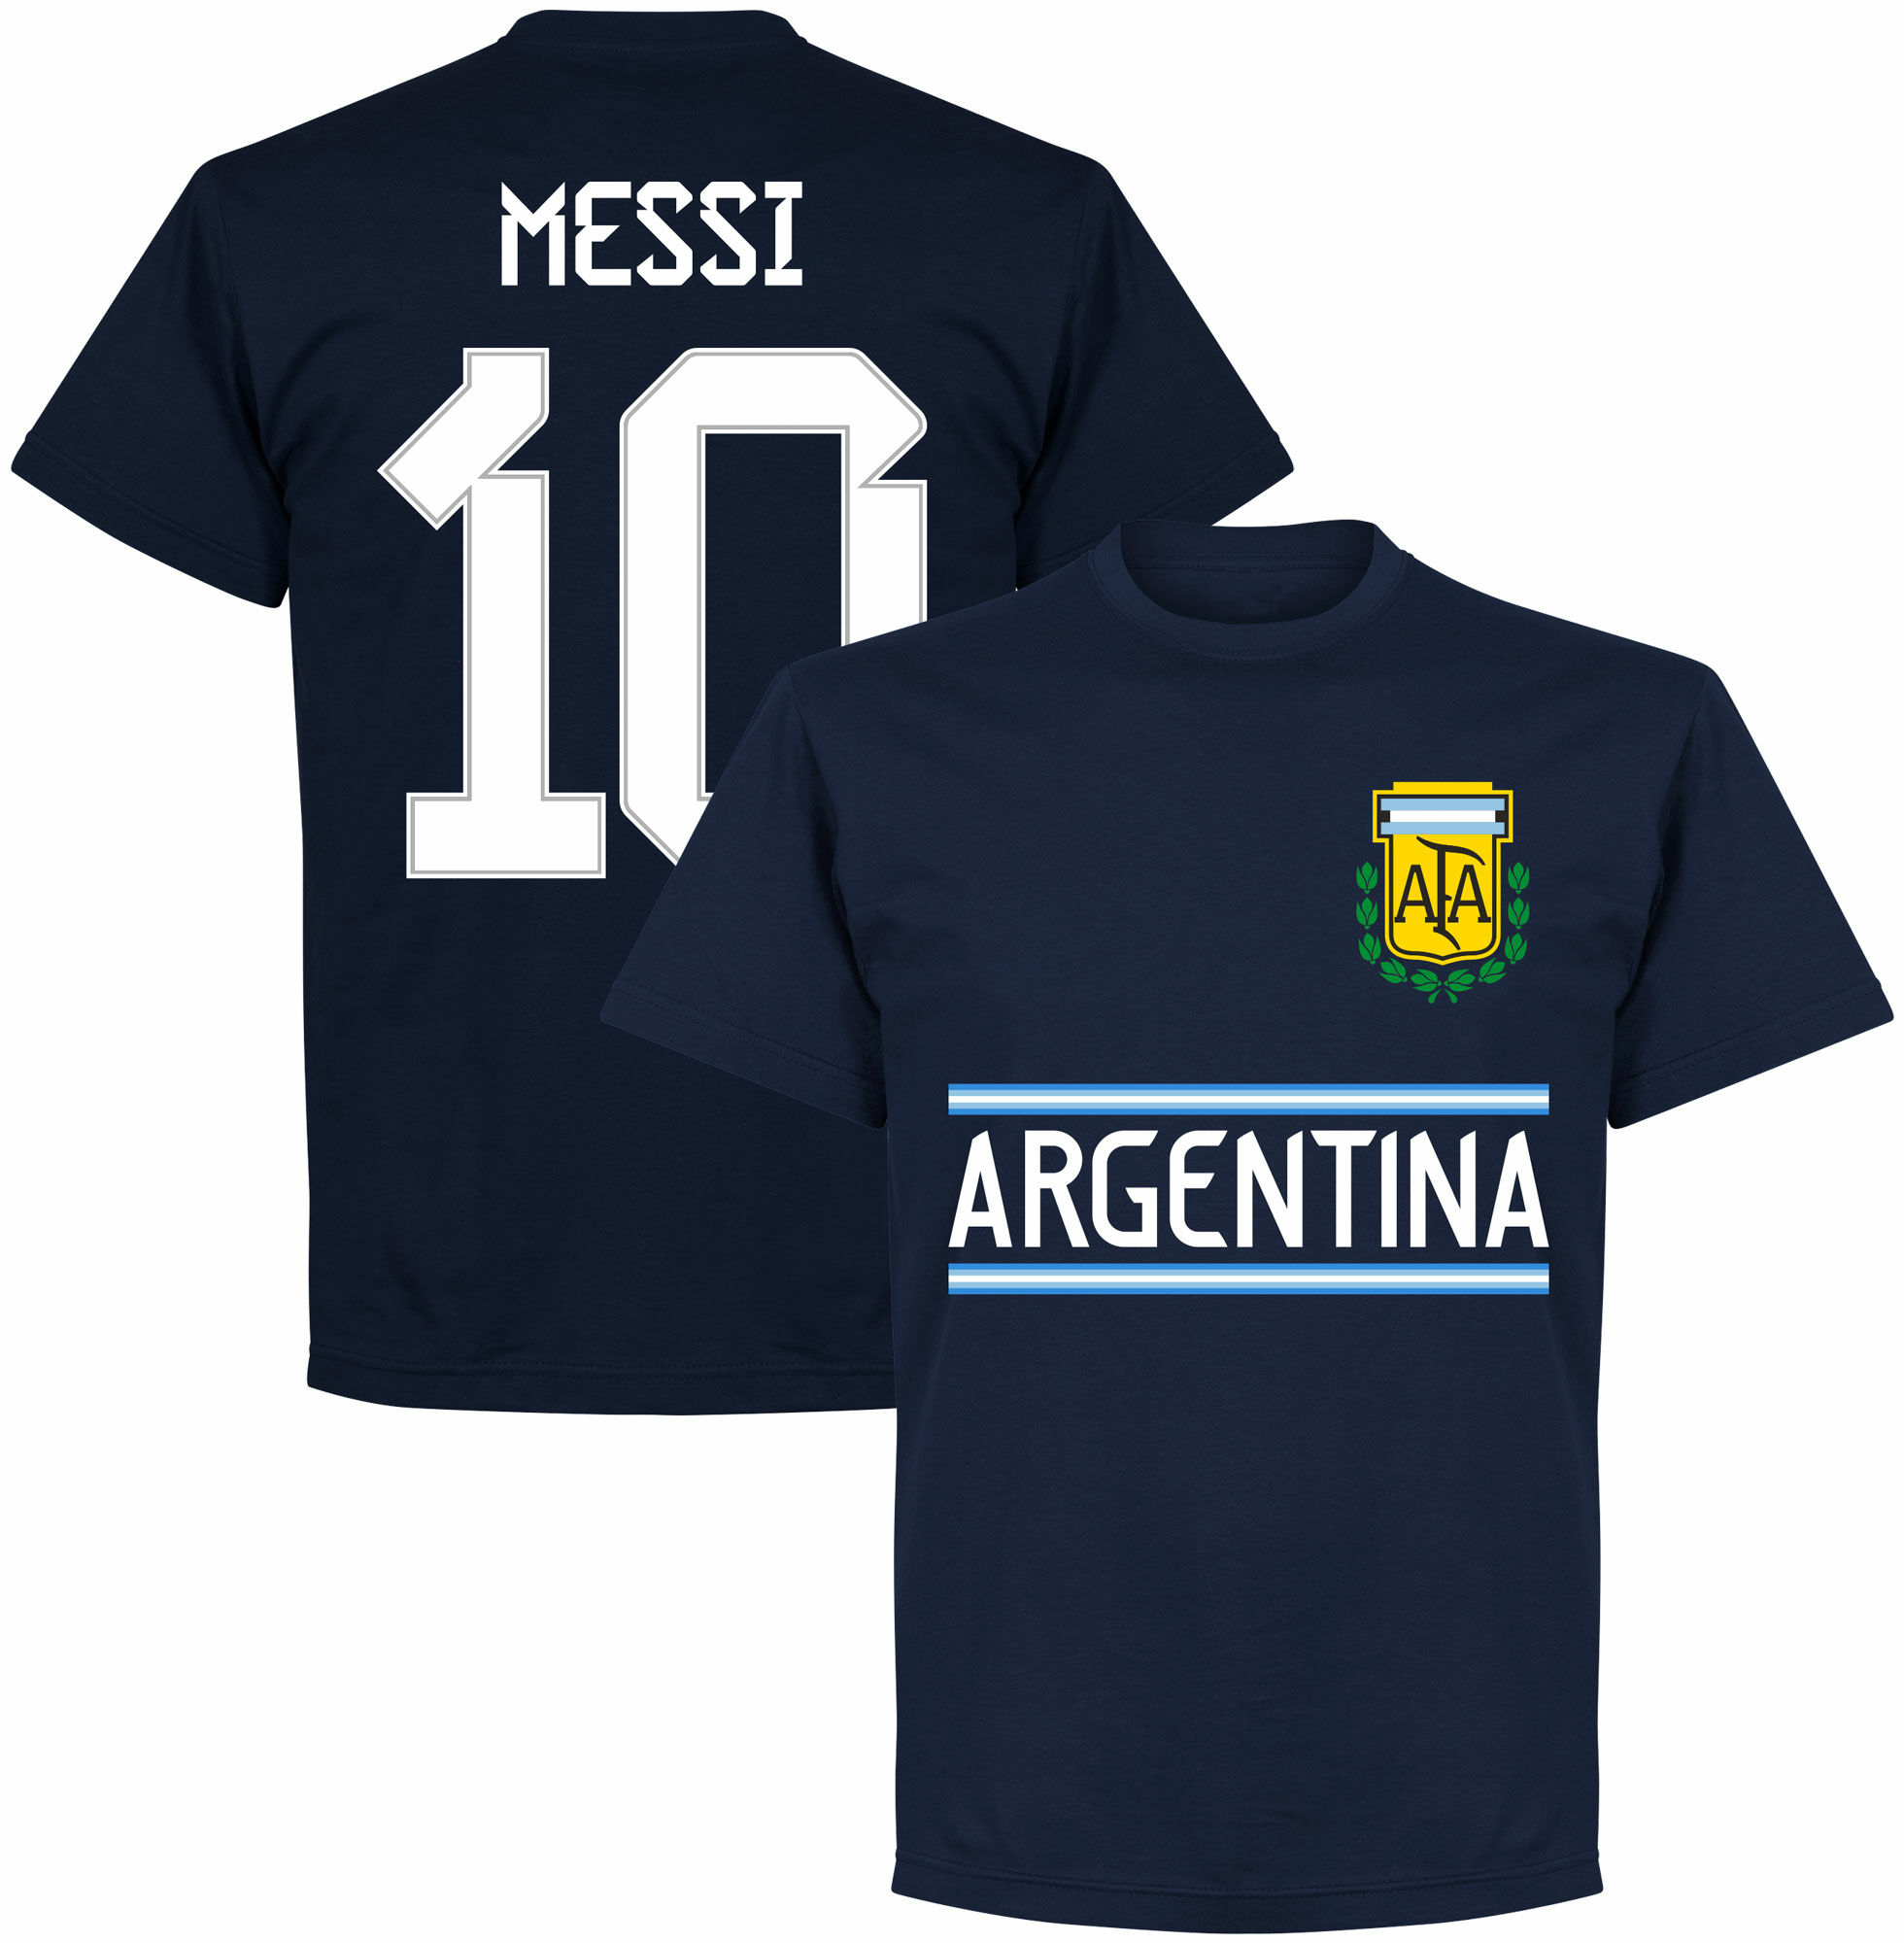 Argentina - Tričko - číslo 10, modré, Lionel Messi